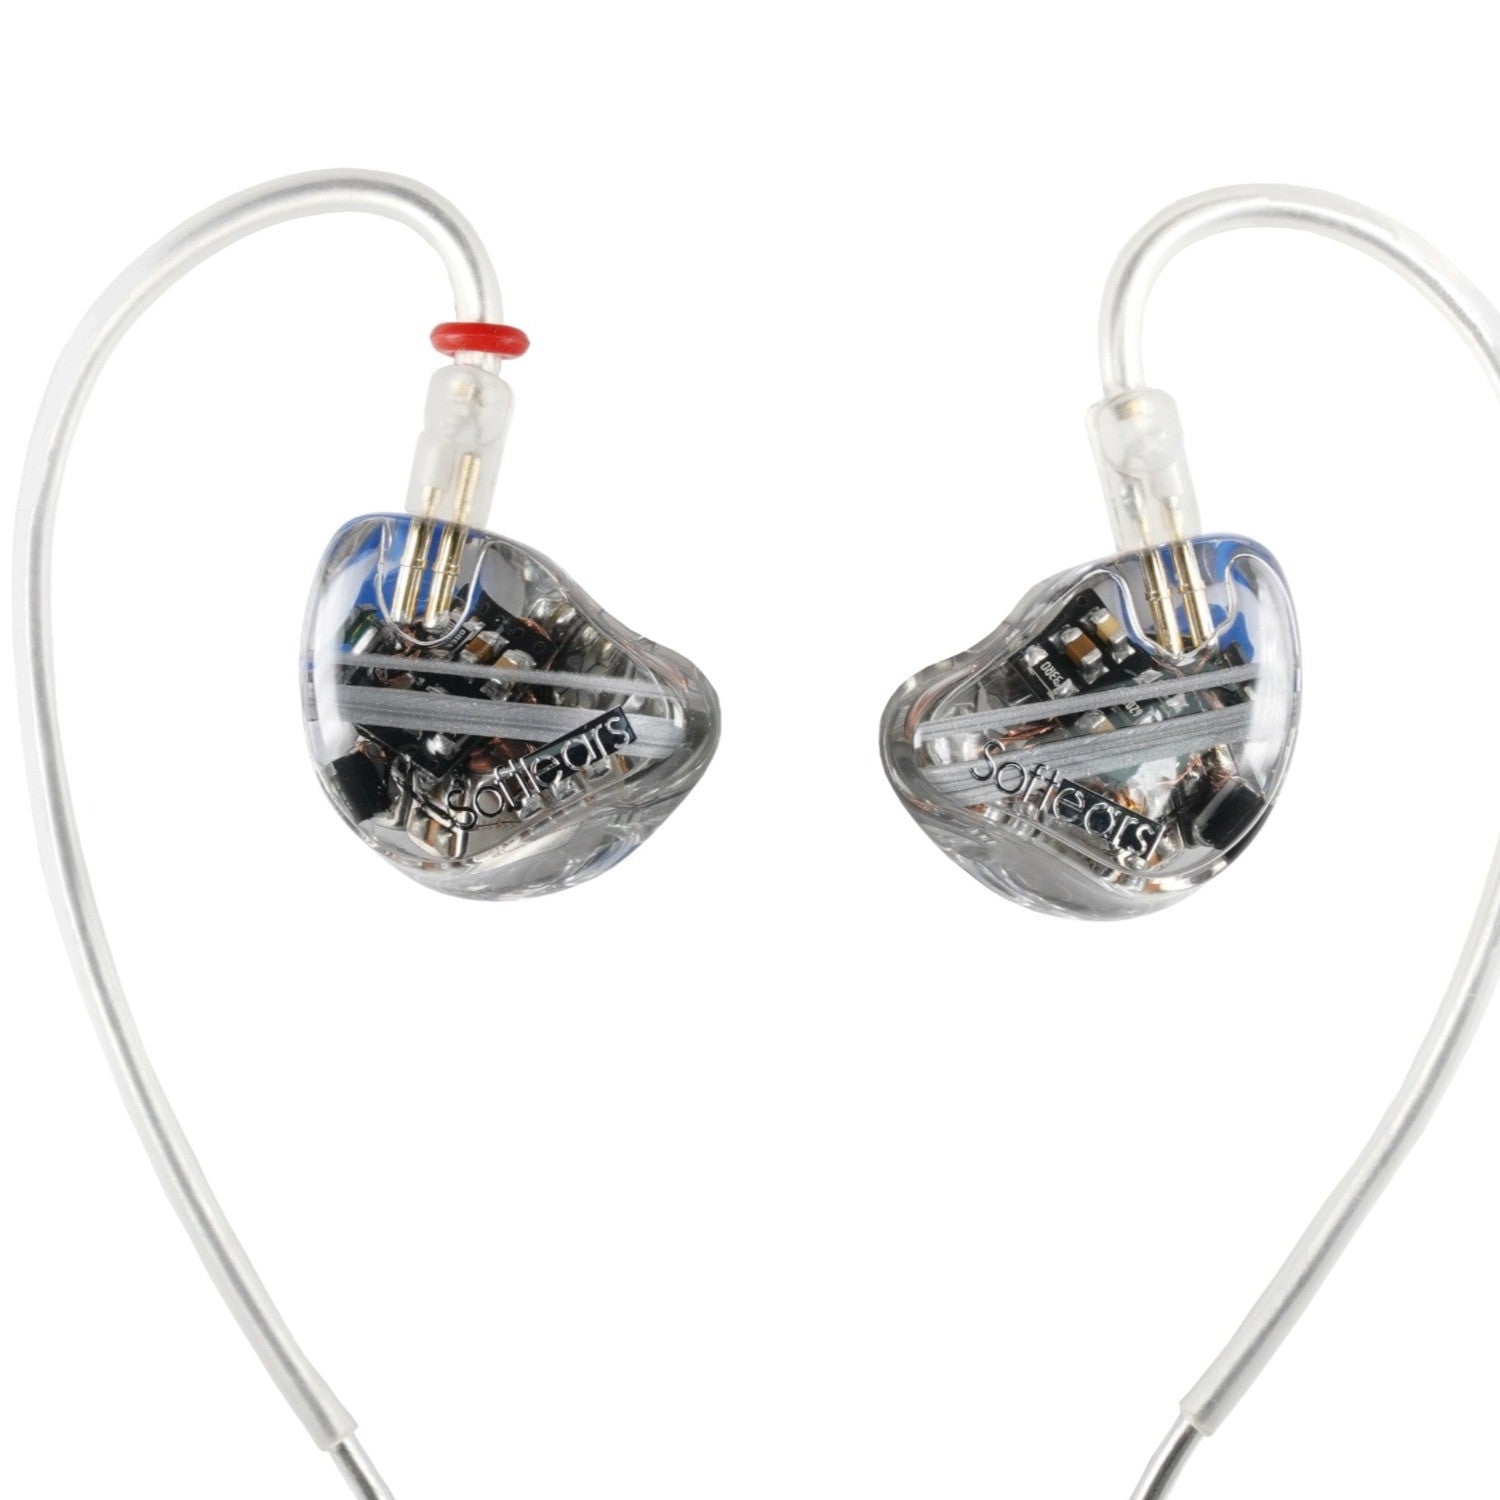 SoftEars RS10 In Ear Monitors